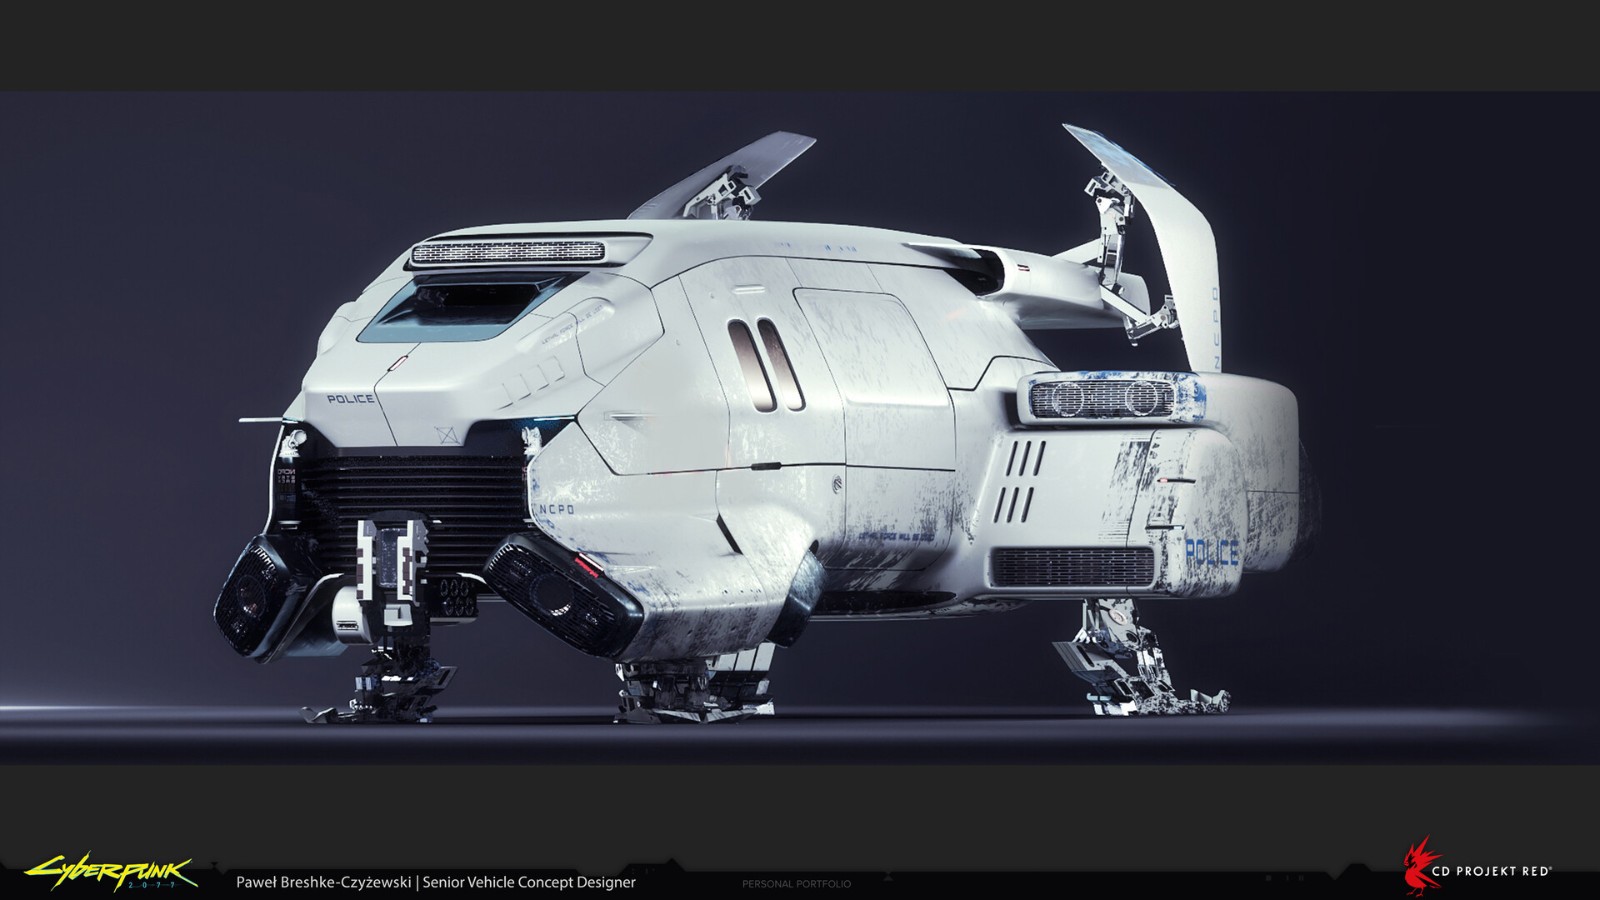 《赛专朋克2077》新不俗里图 展现已曾出现的军用飞止器